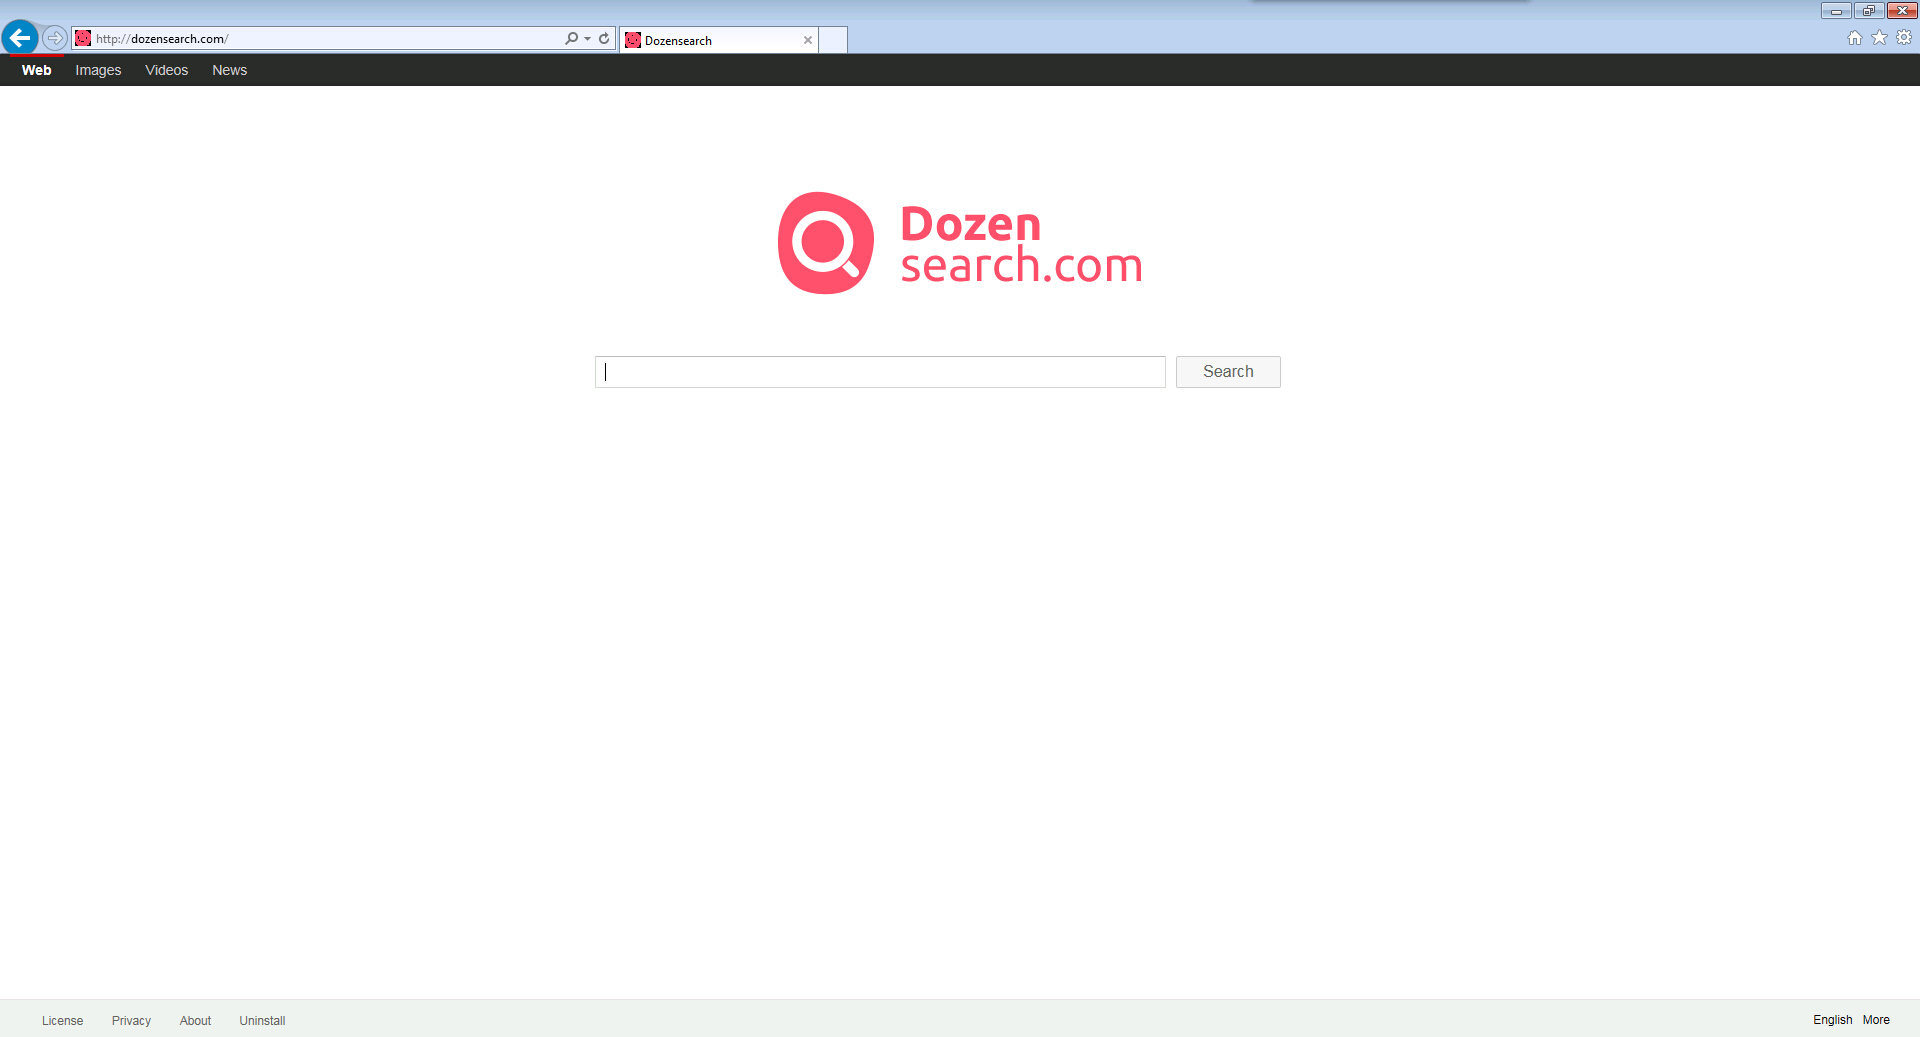 Dozensearch.com